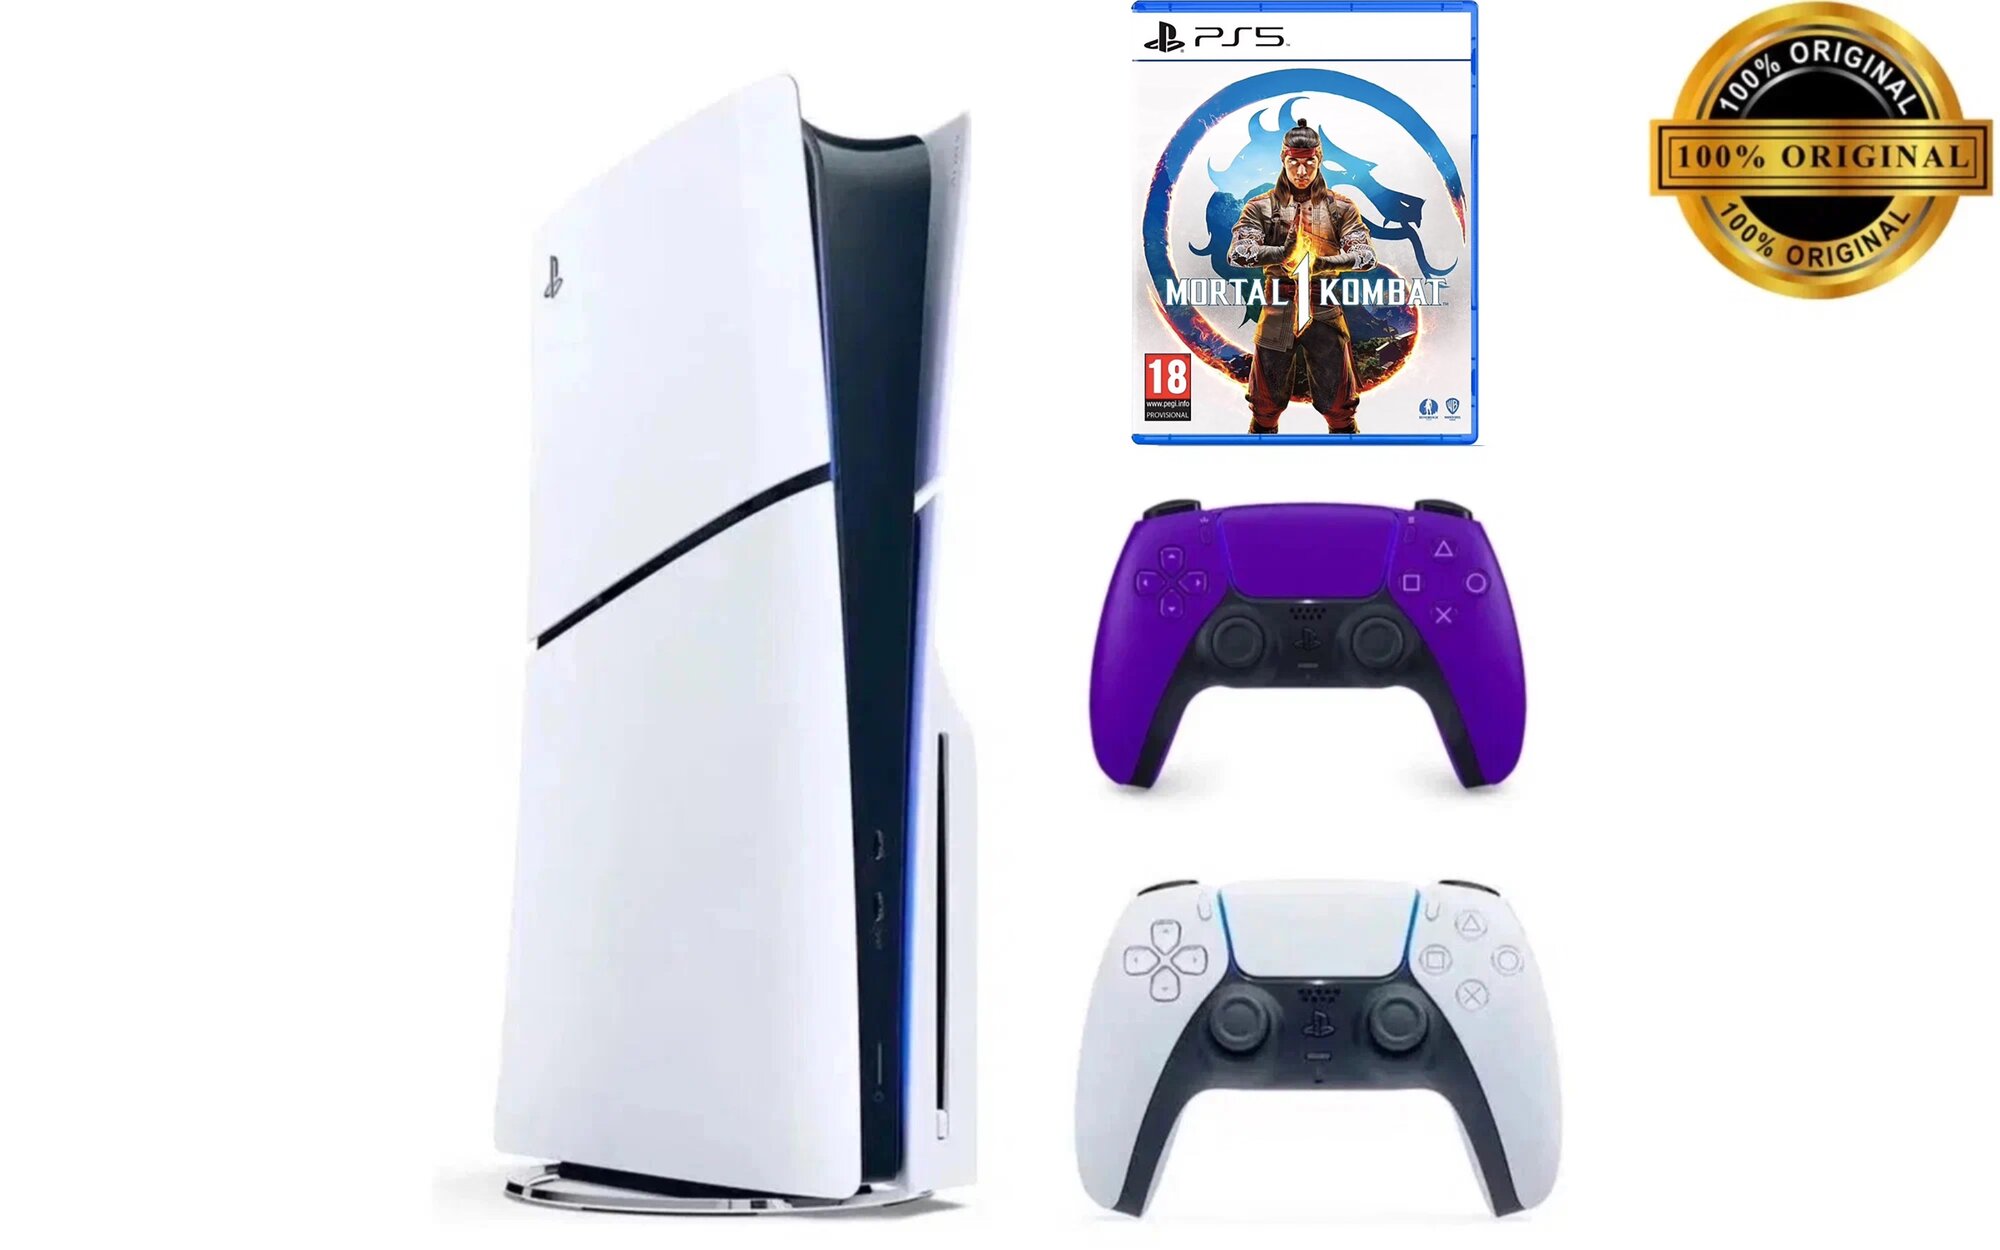 Игровая приставка Sony PlayStation 5 Slim, с дисководом, 1 ТБ, два геймпада (белый и фиолетовый), Mortal Kombat 1